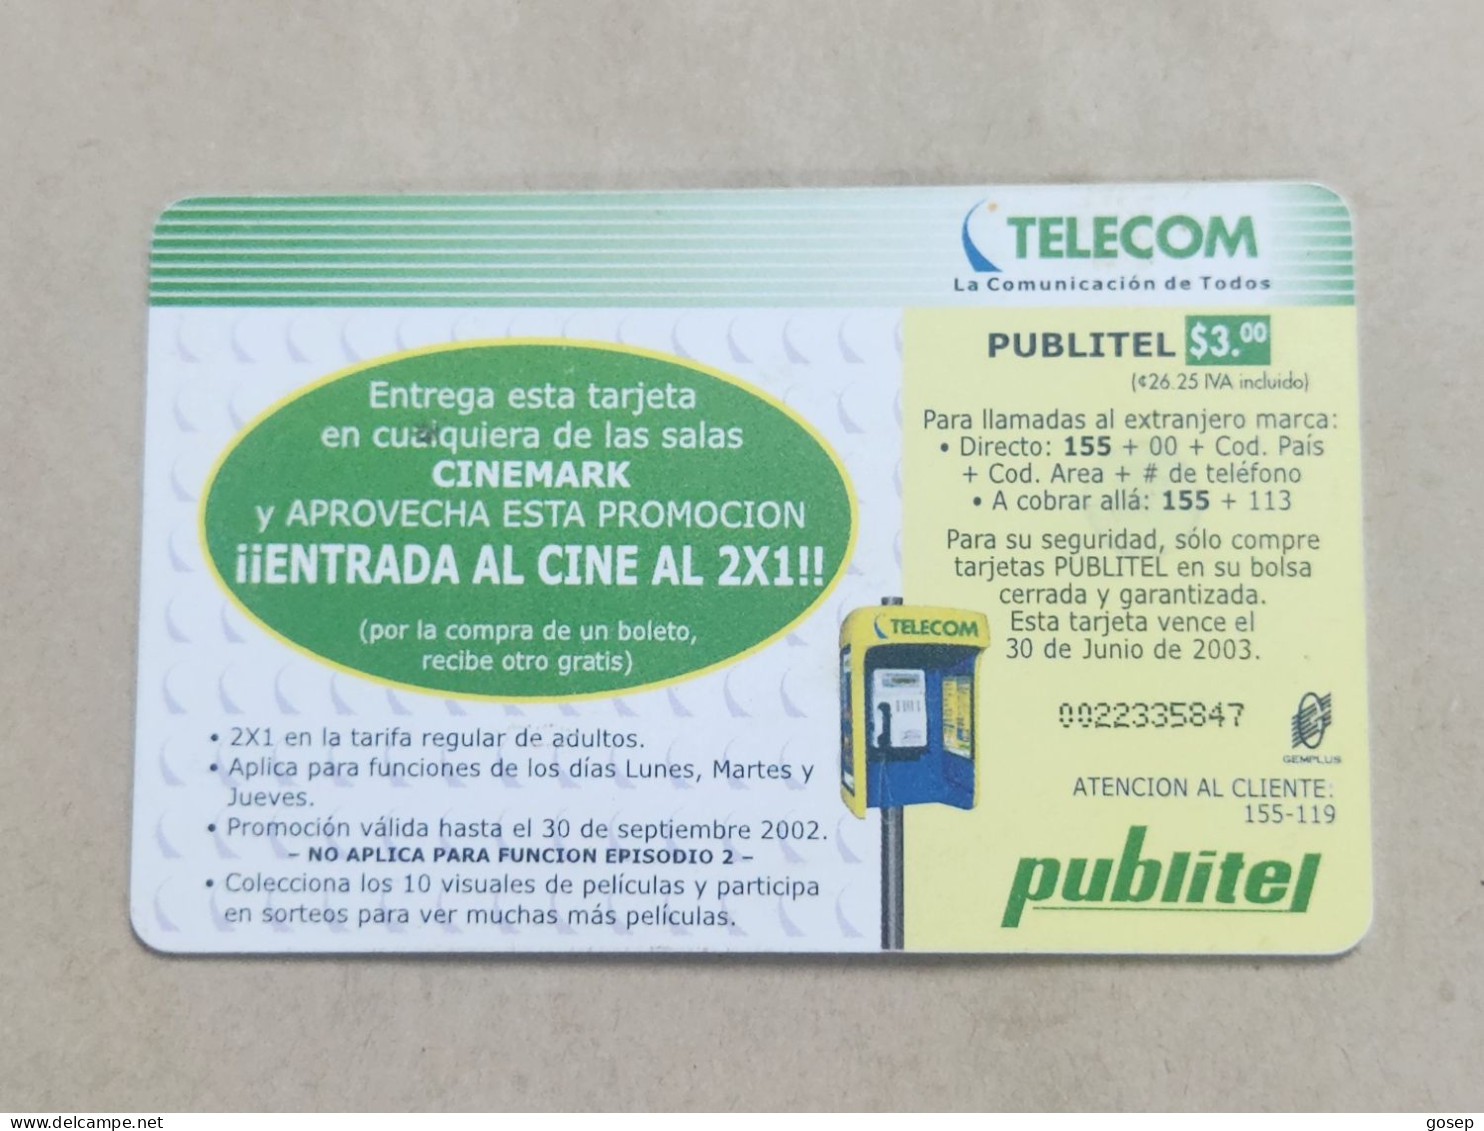 EL-SALVADOR-(ELS-PUB-053)-THE SCORPION KING-COLECOINABLE-(4)-($ 3.00)-(0022335847)-used Card+1card Prepiad Free - El Salvador